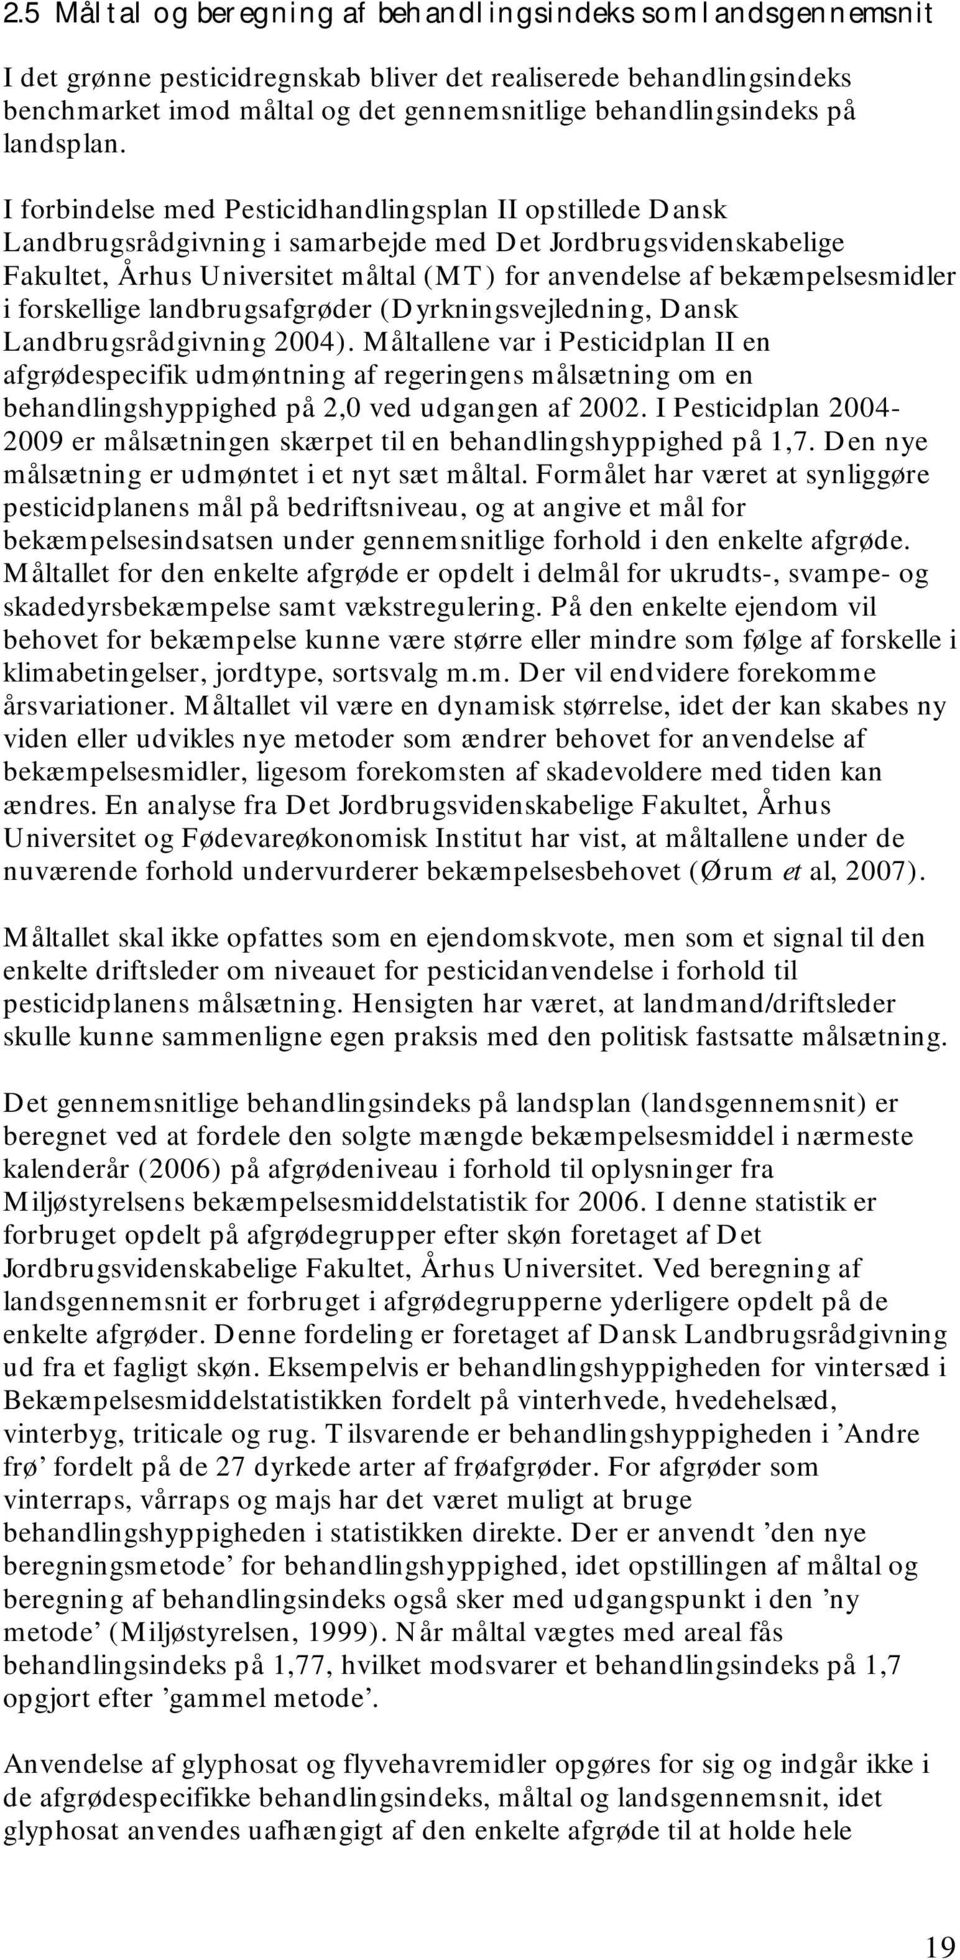 I forbindelse med Pesticidhandlingsplan II opstillede Dansk Landbrugsrådgivning i samarbejde med Det Jordbrugsvidenskabelige Fakultet, Århus Universitet måltal (MT) for anvendelse af